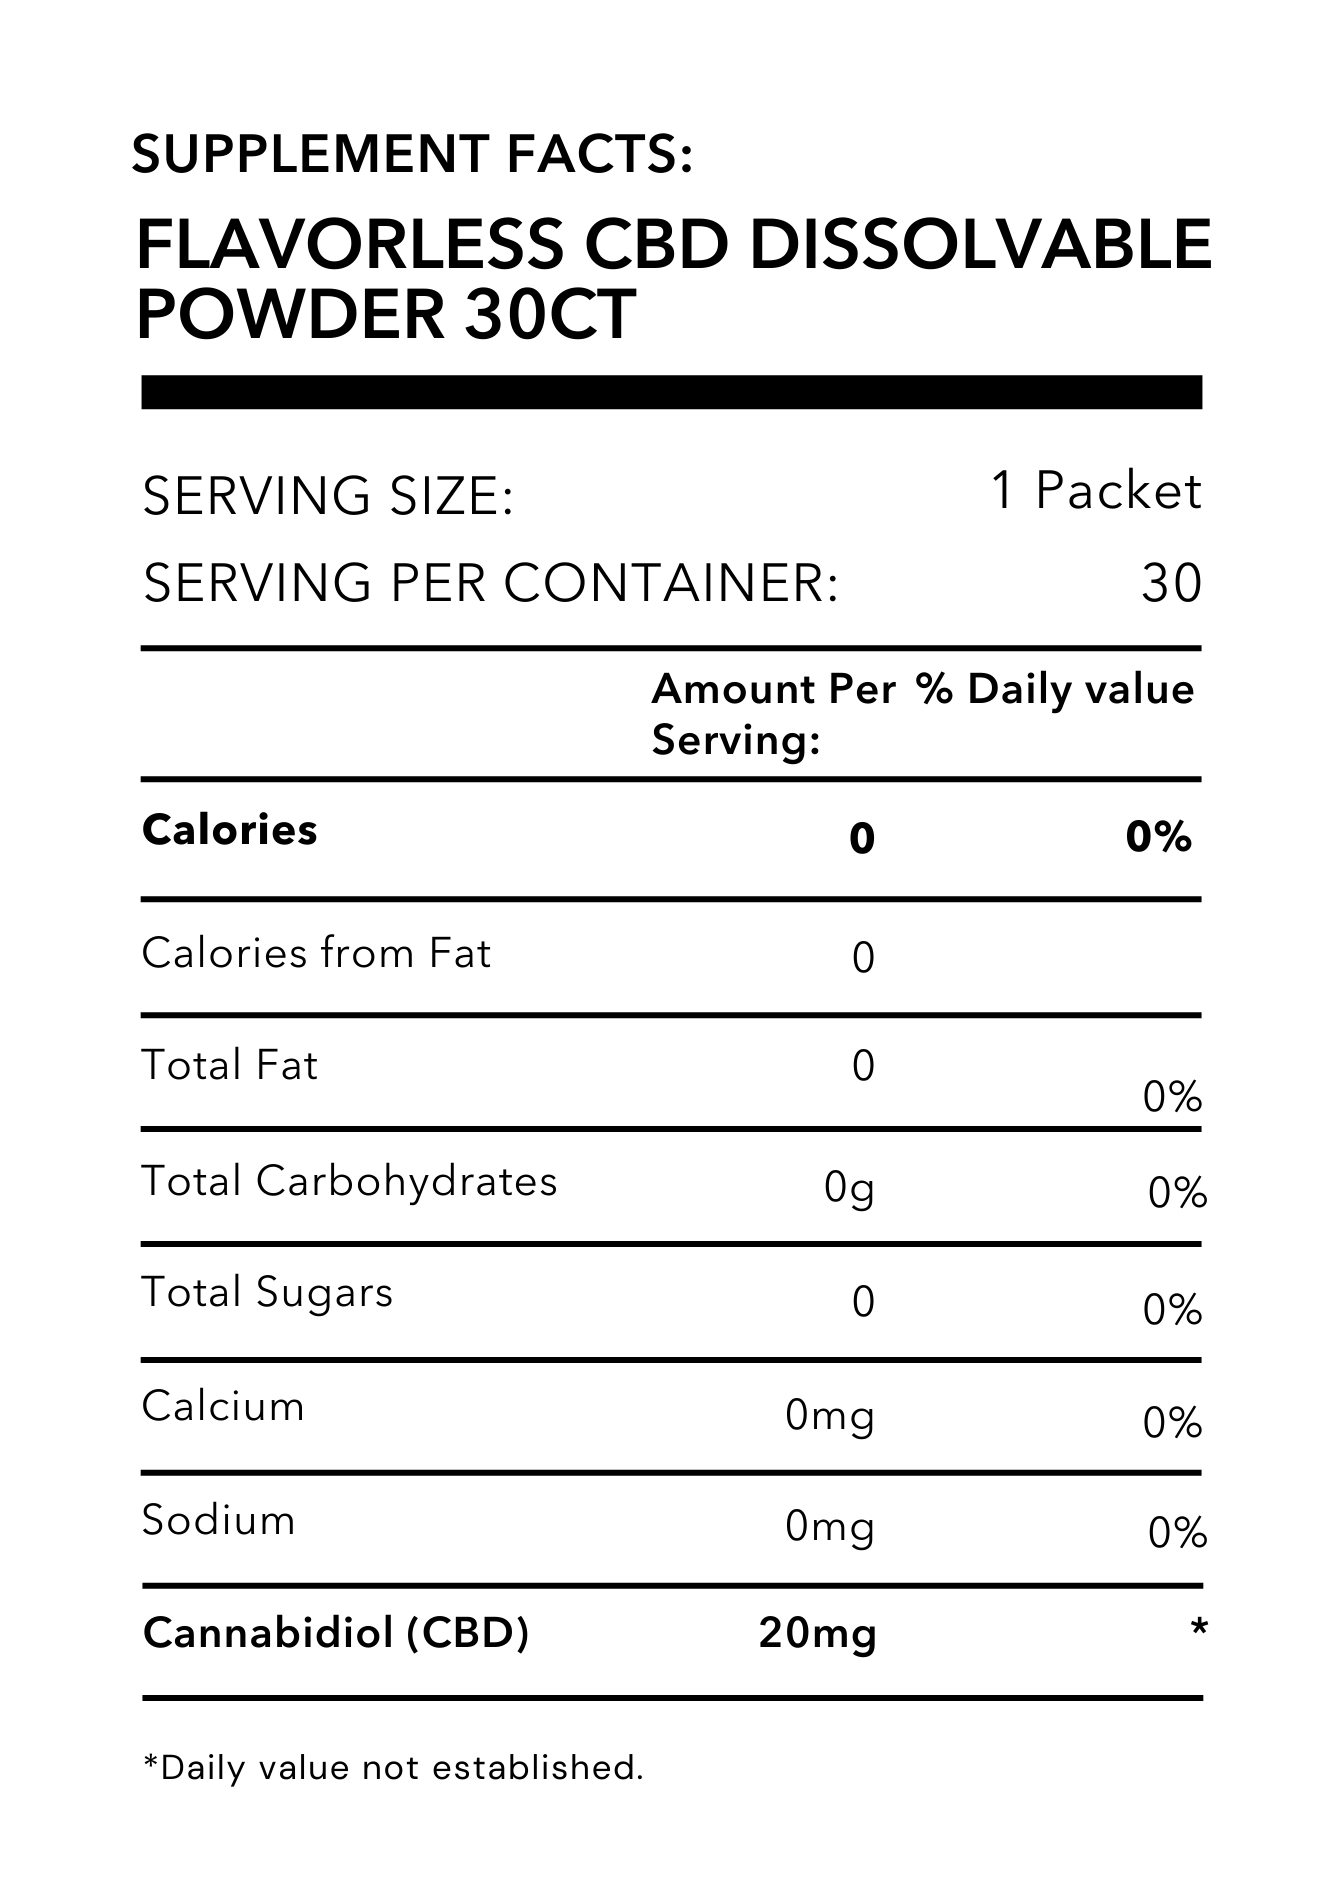 Flavorless CBD Dissolvable Powder 30ct